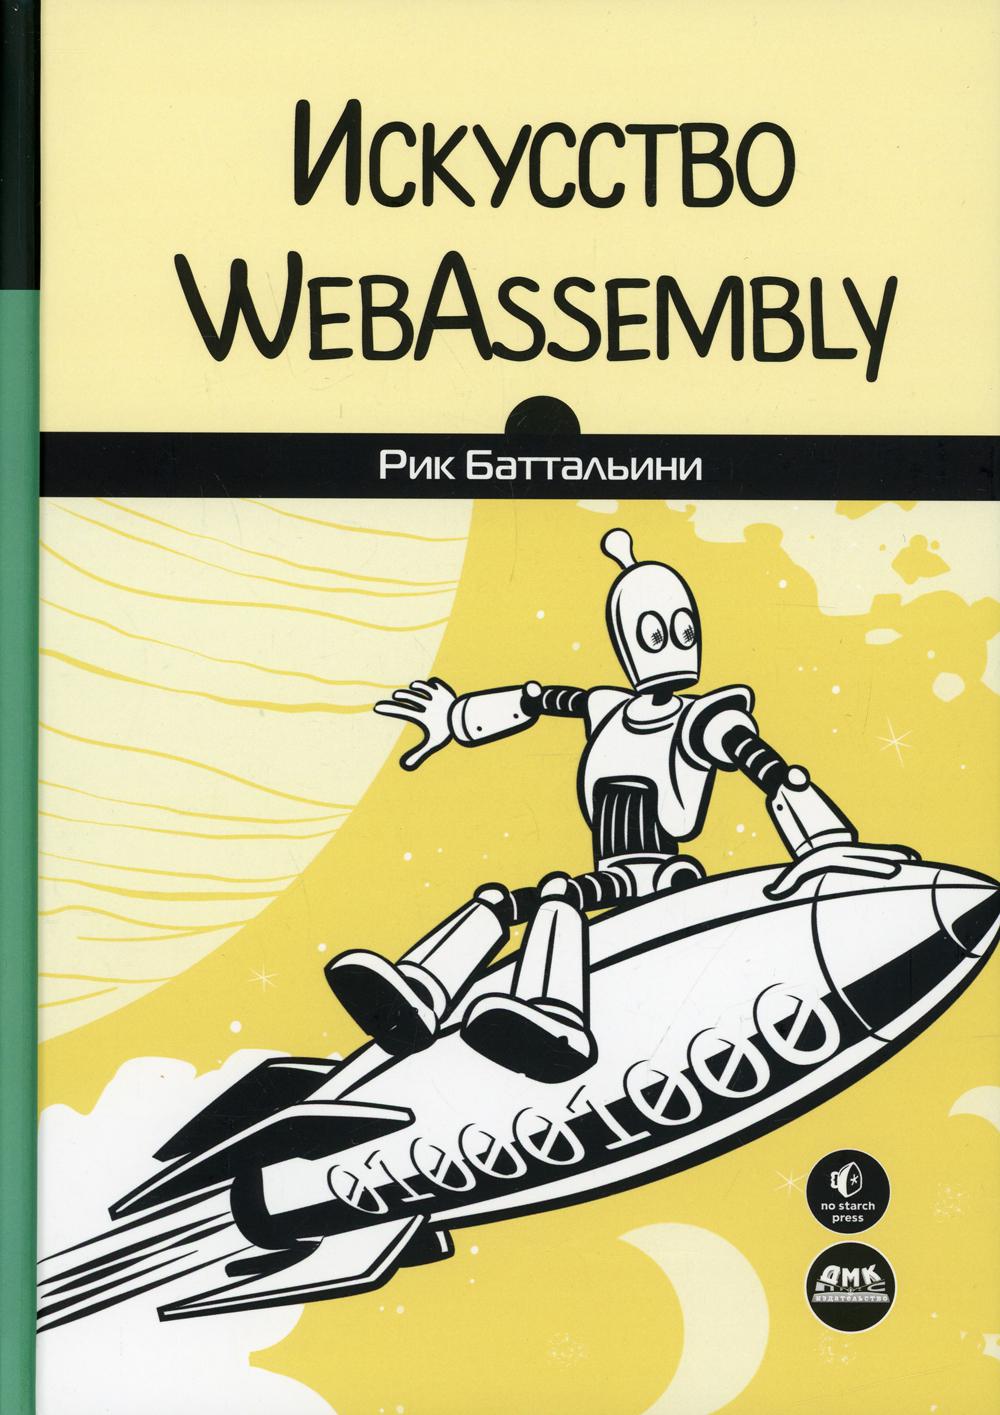  WebAssembly